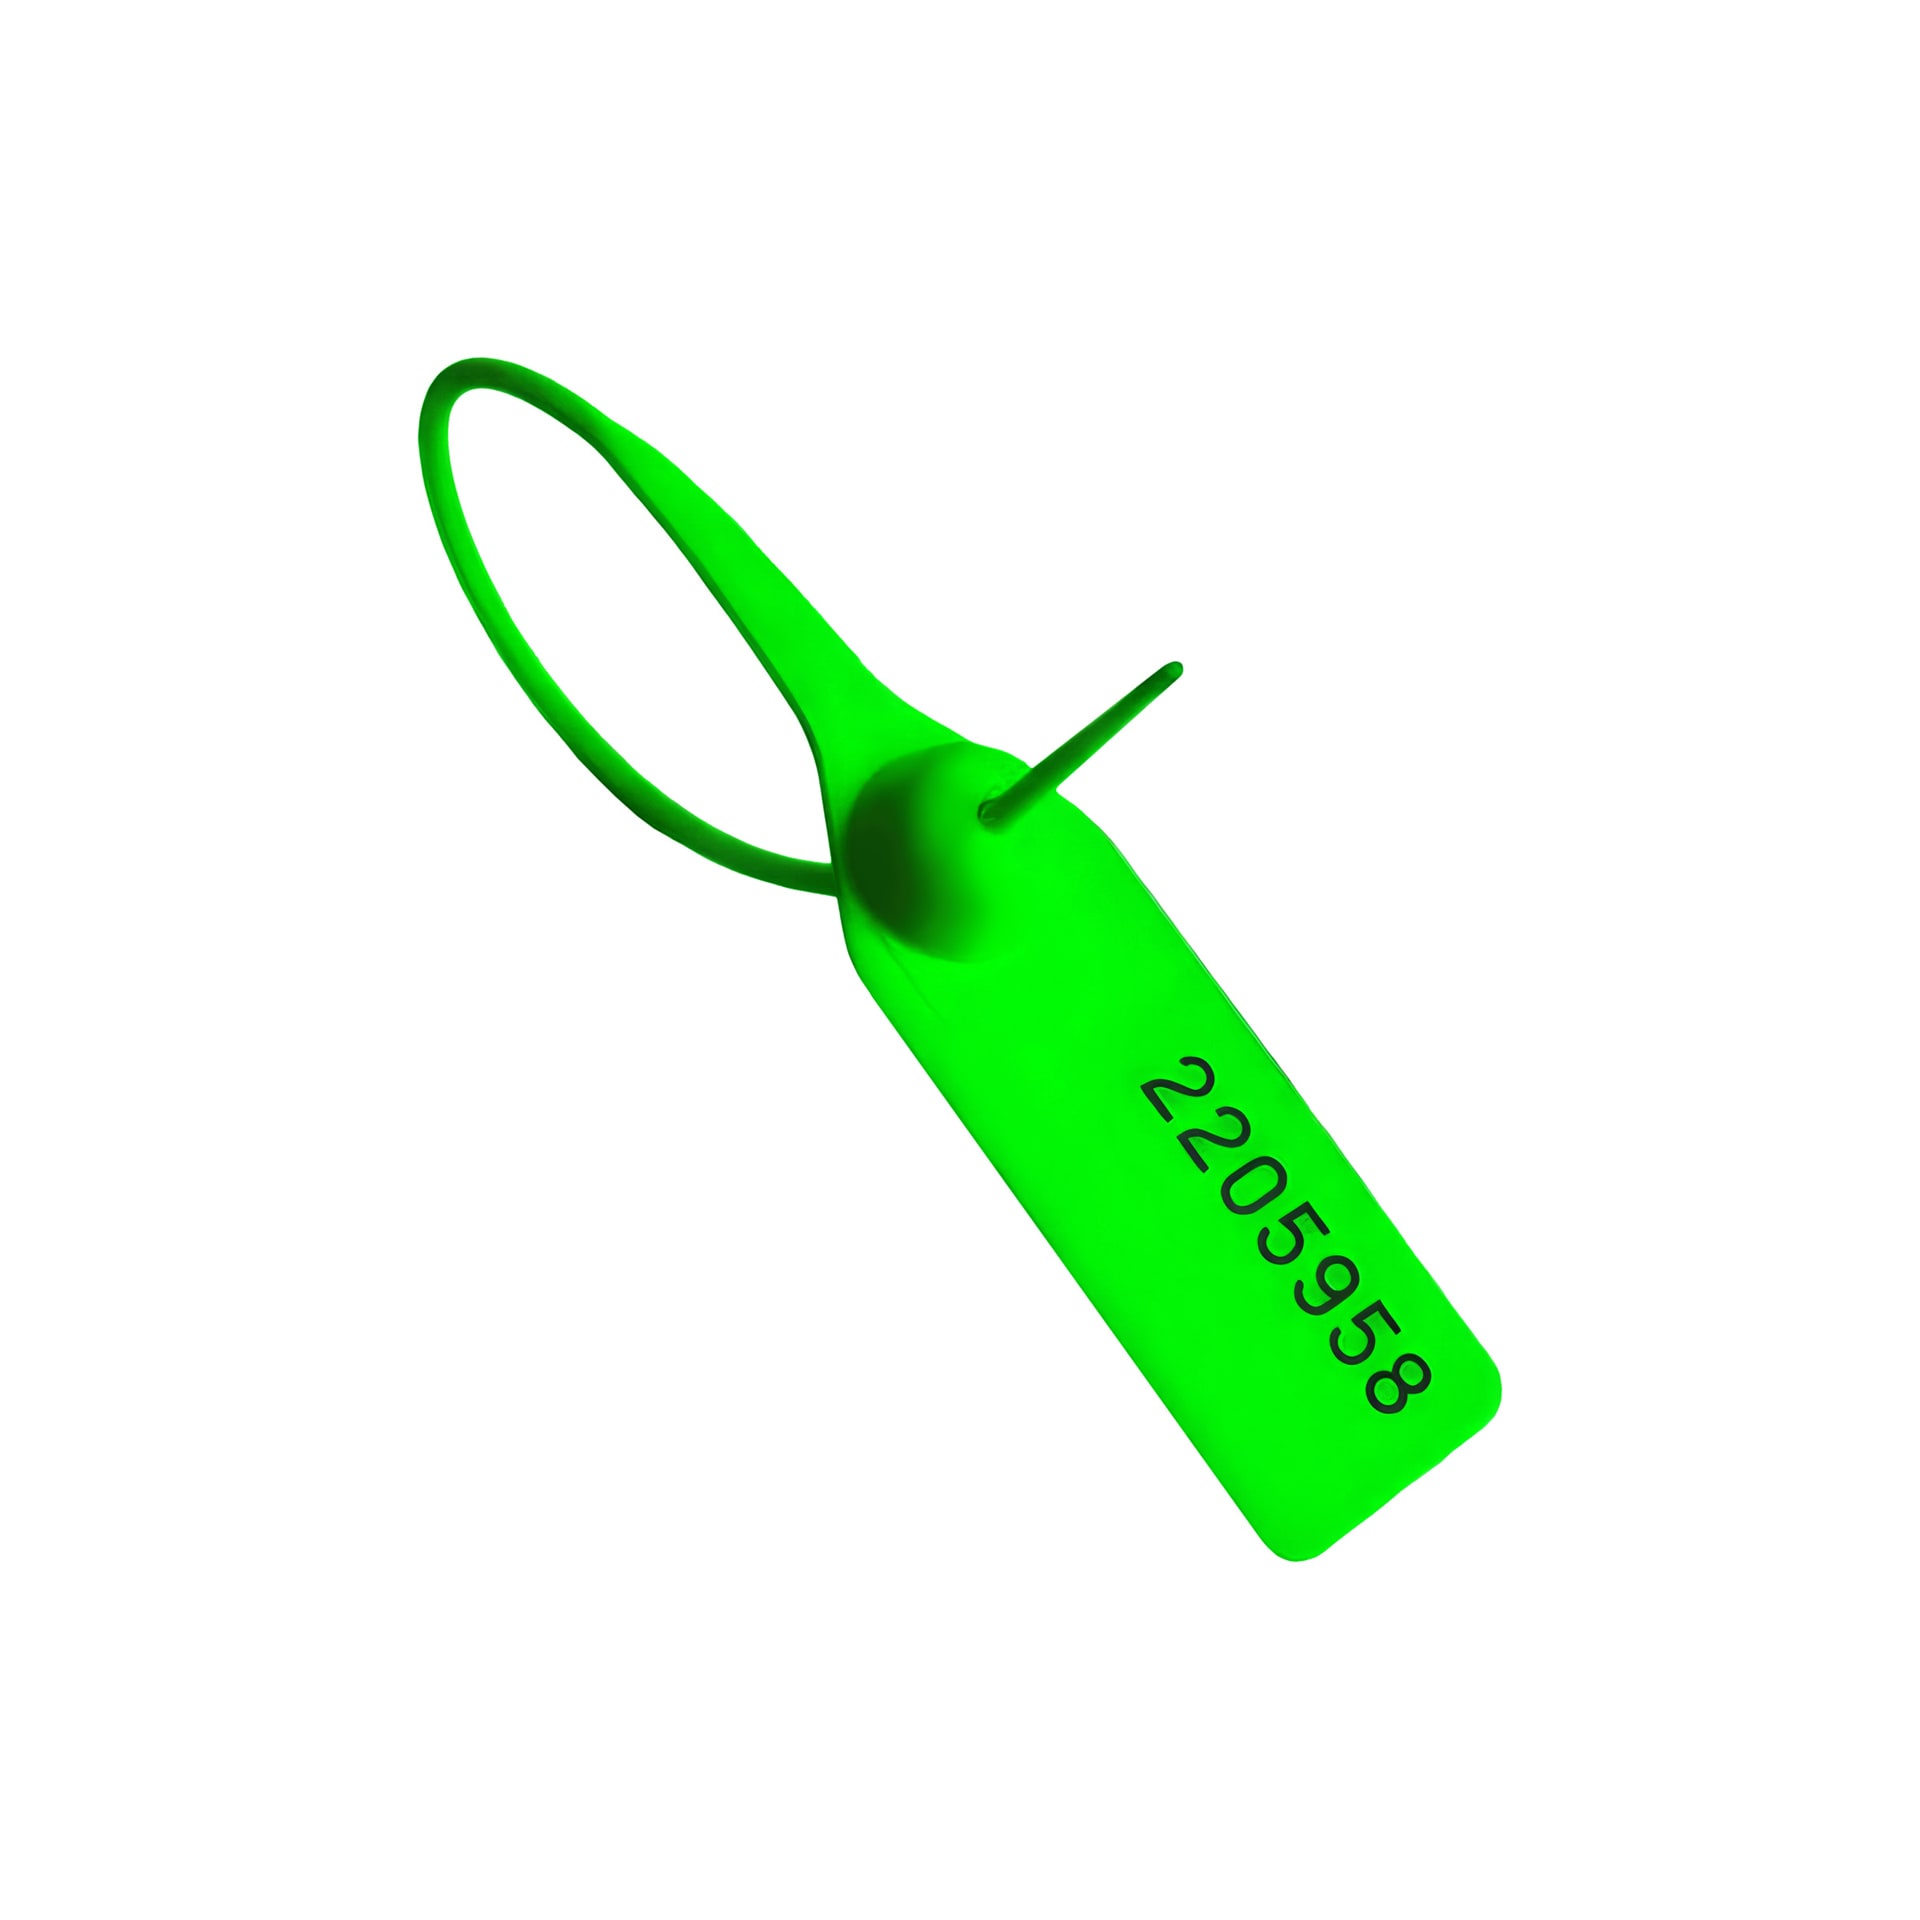 Пломба номерная пластиковая ОСА-330 зеленый оптом в наличии, на заказ